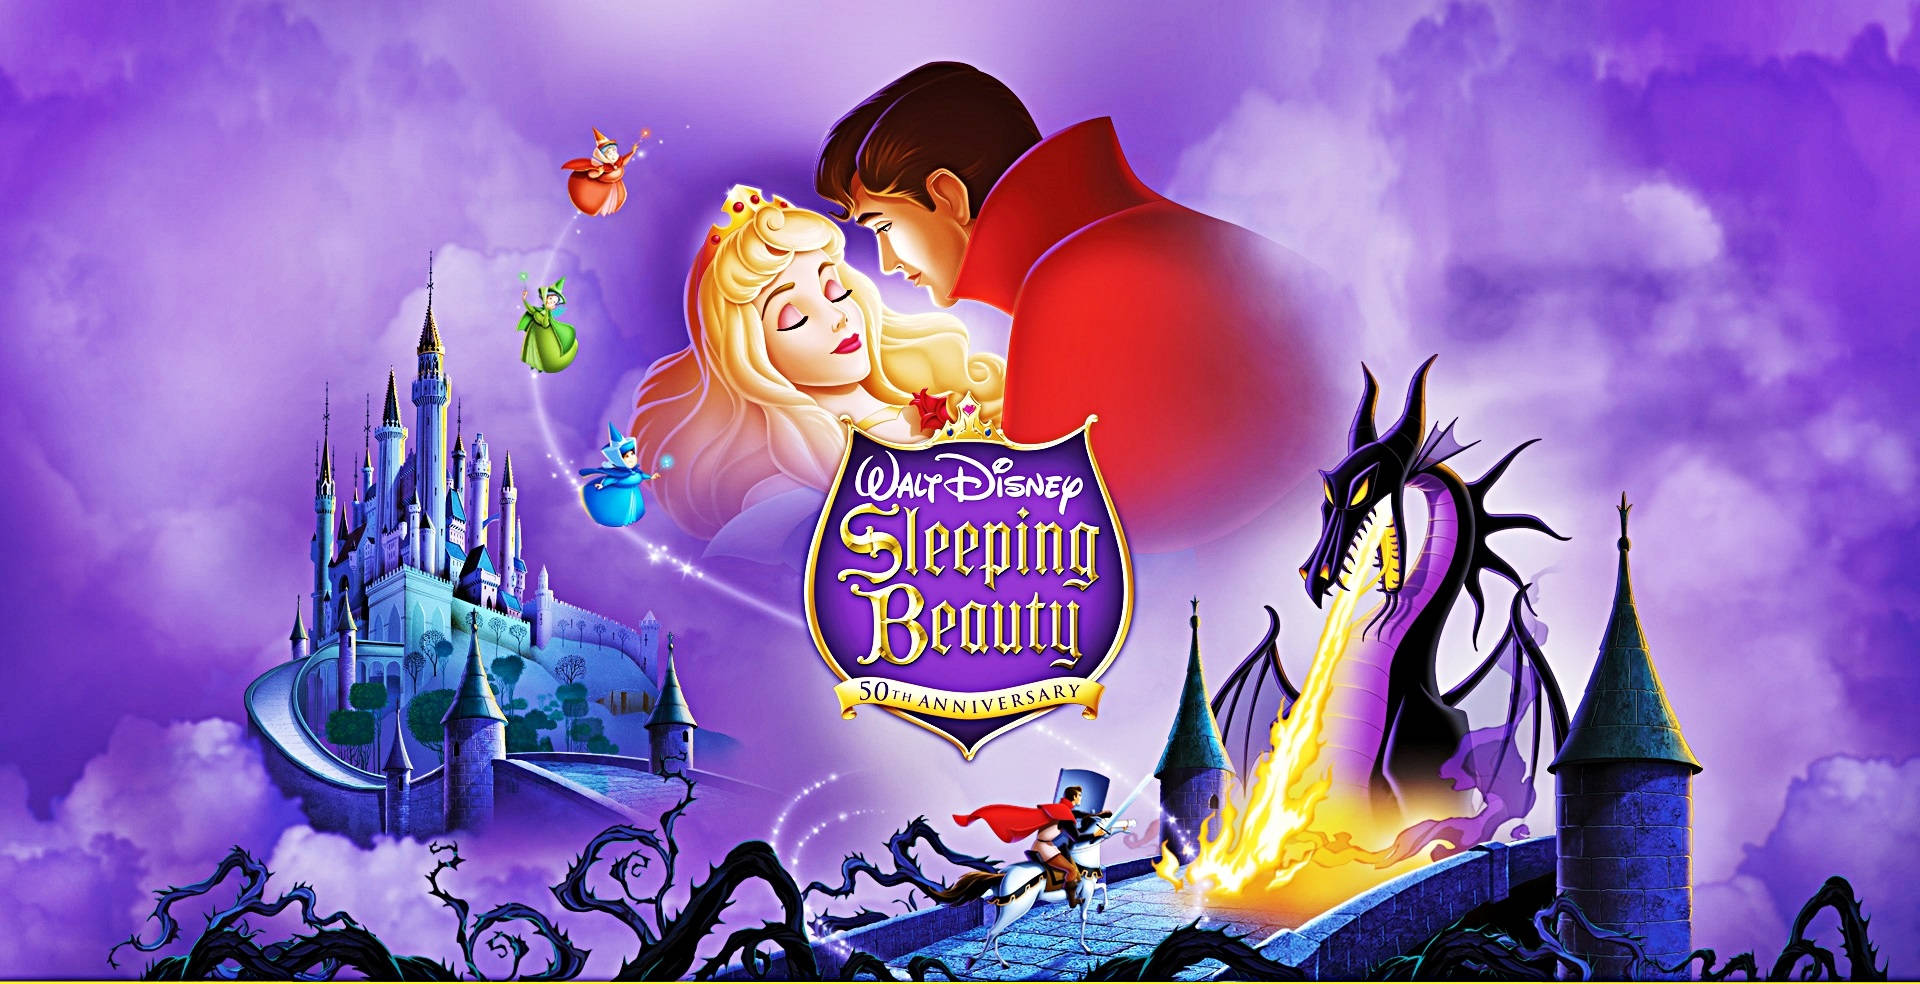 Disney Characters Of Sleeping Beauty